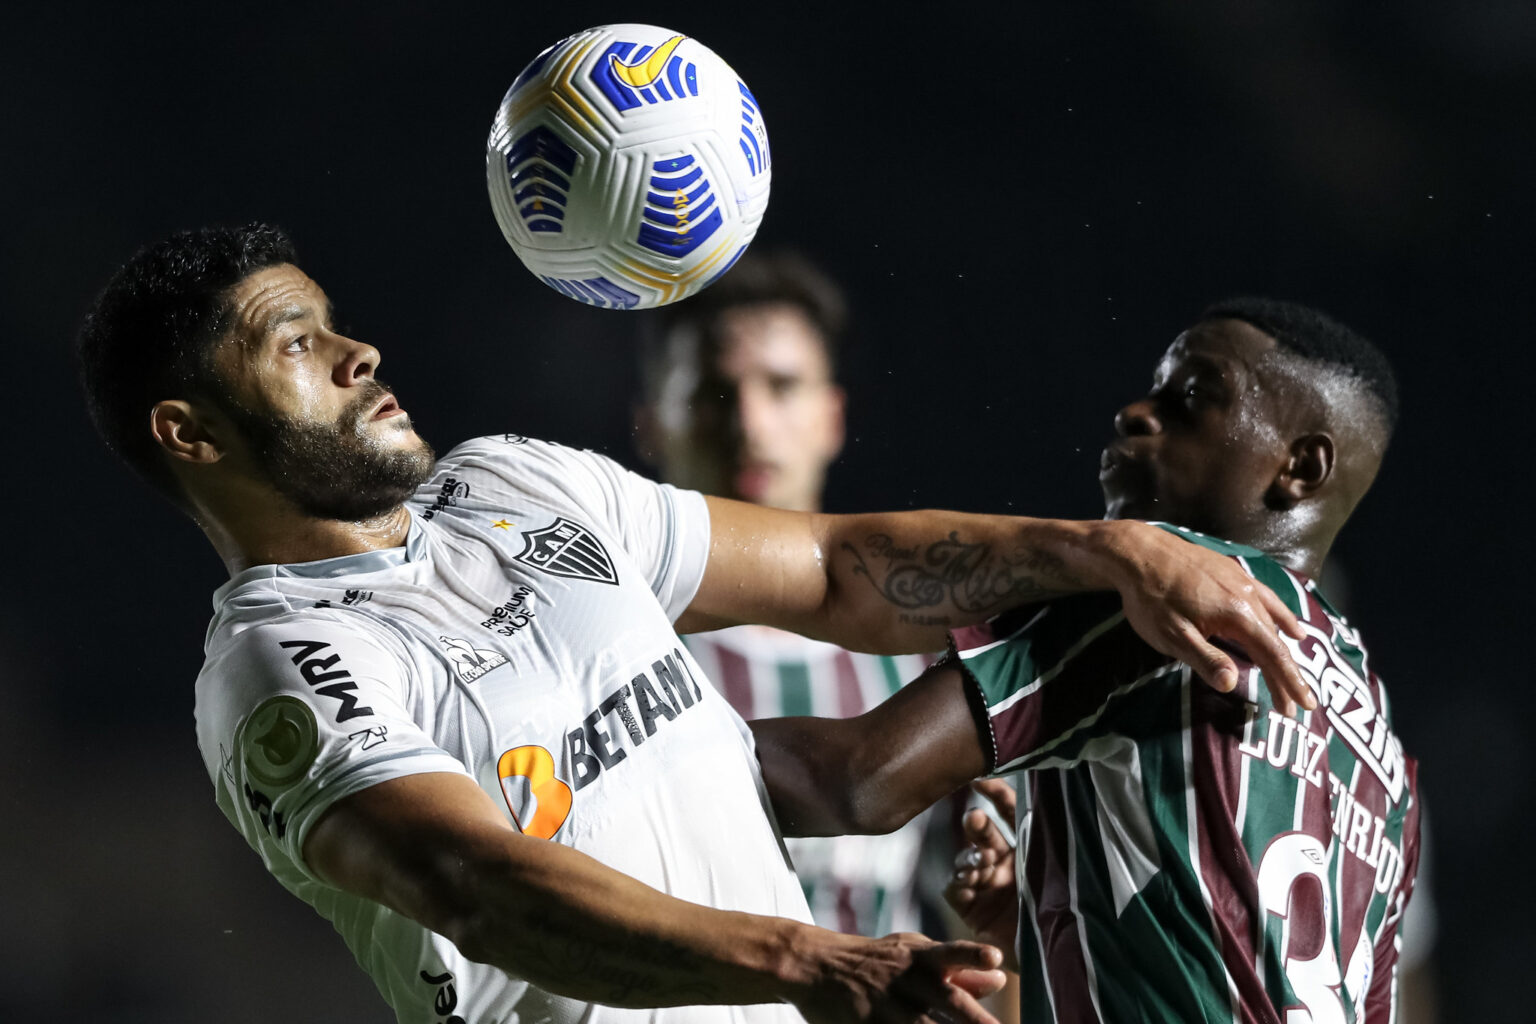 Saiba as prováveis escalações e onde assistir Fluminense x Atlético pela Copa do Brasil